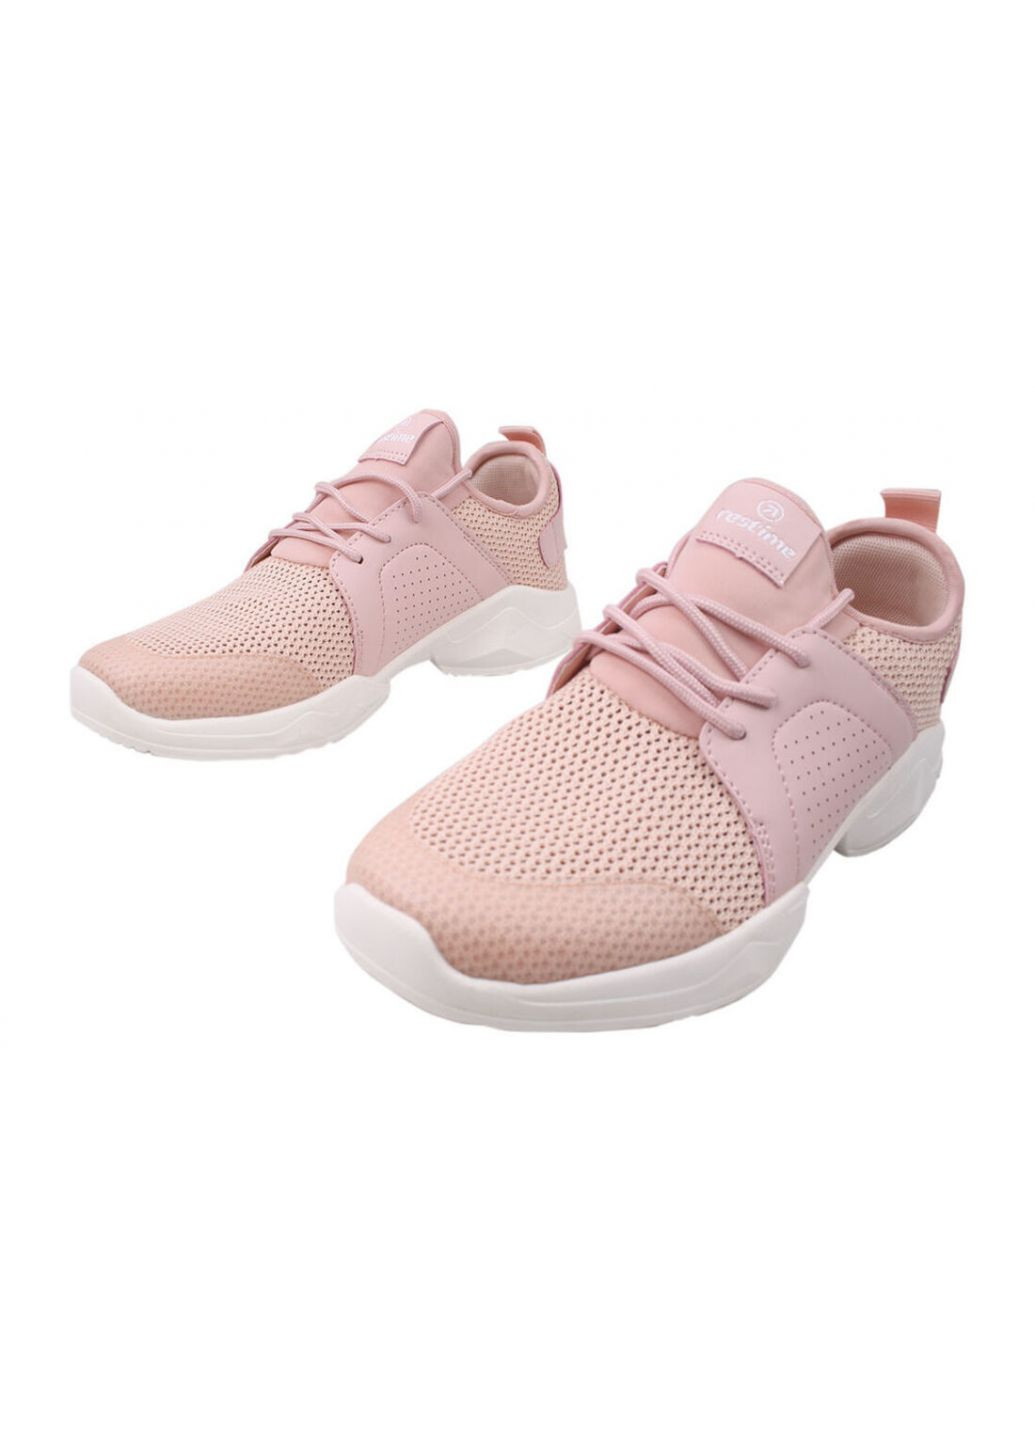 Розовые кроссовки женские текстиль, цвет розовый Restime 103-20LK